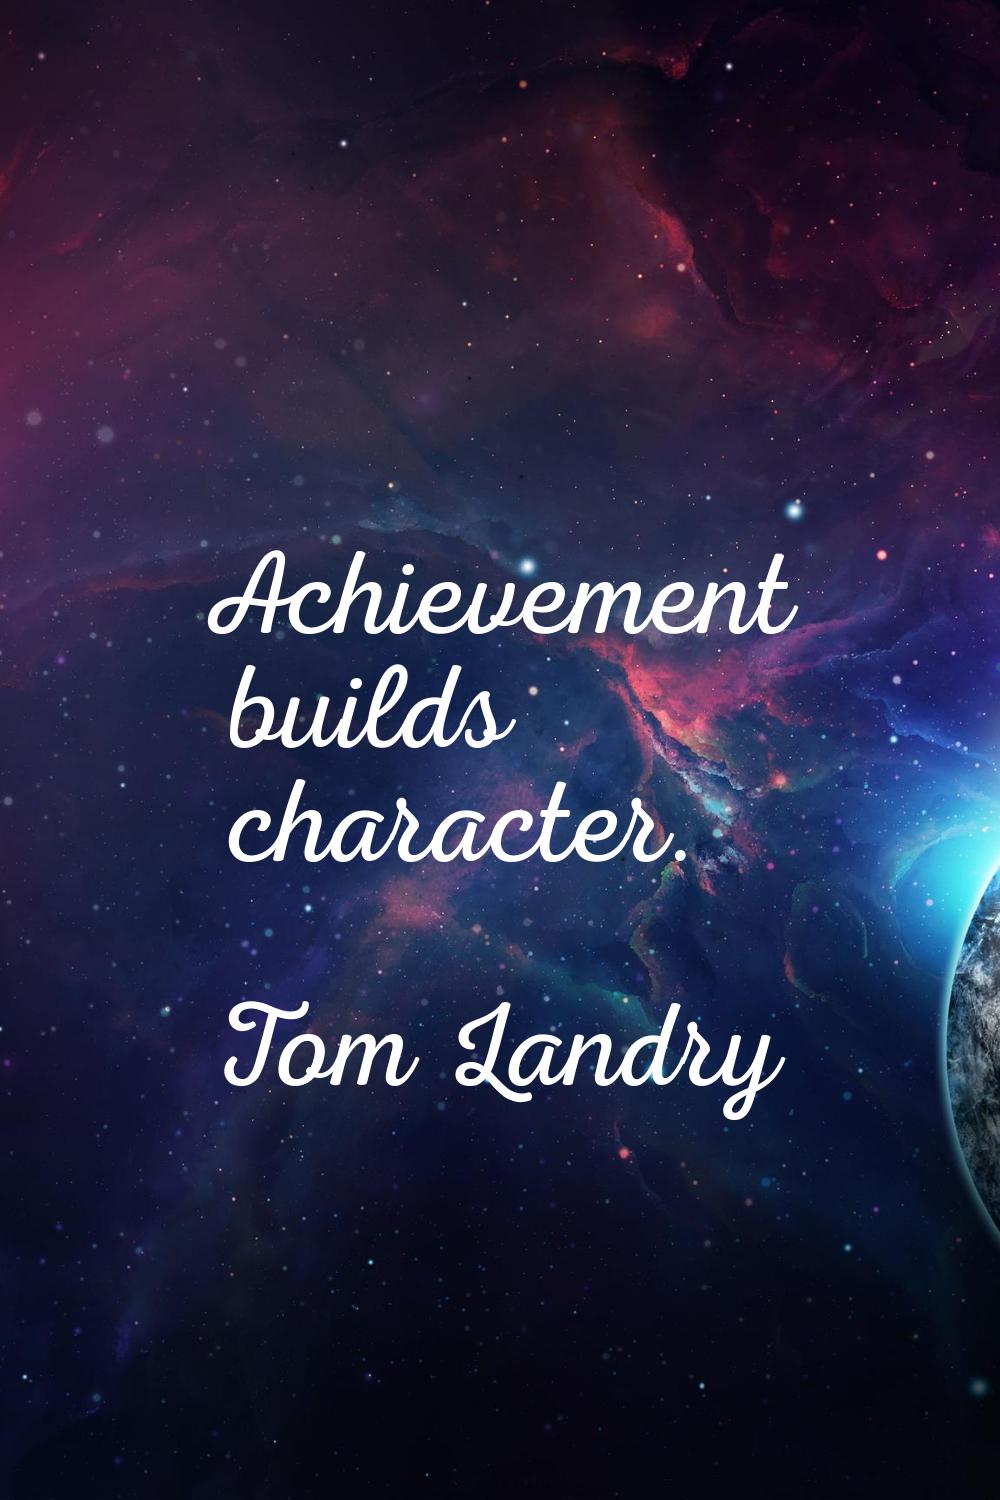 Achievement builds character.